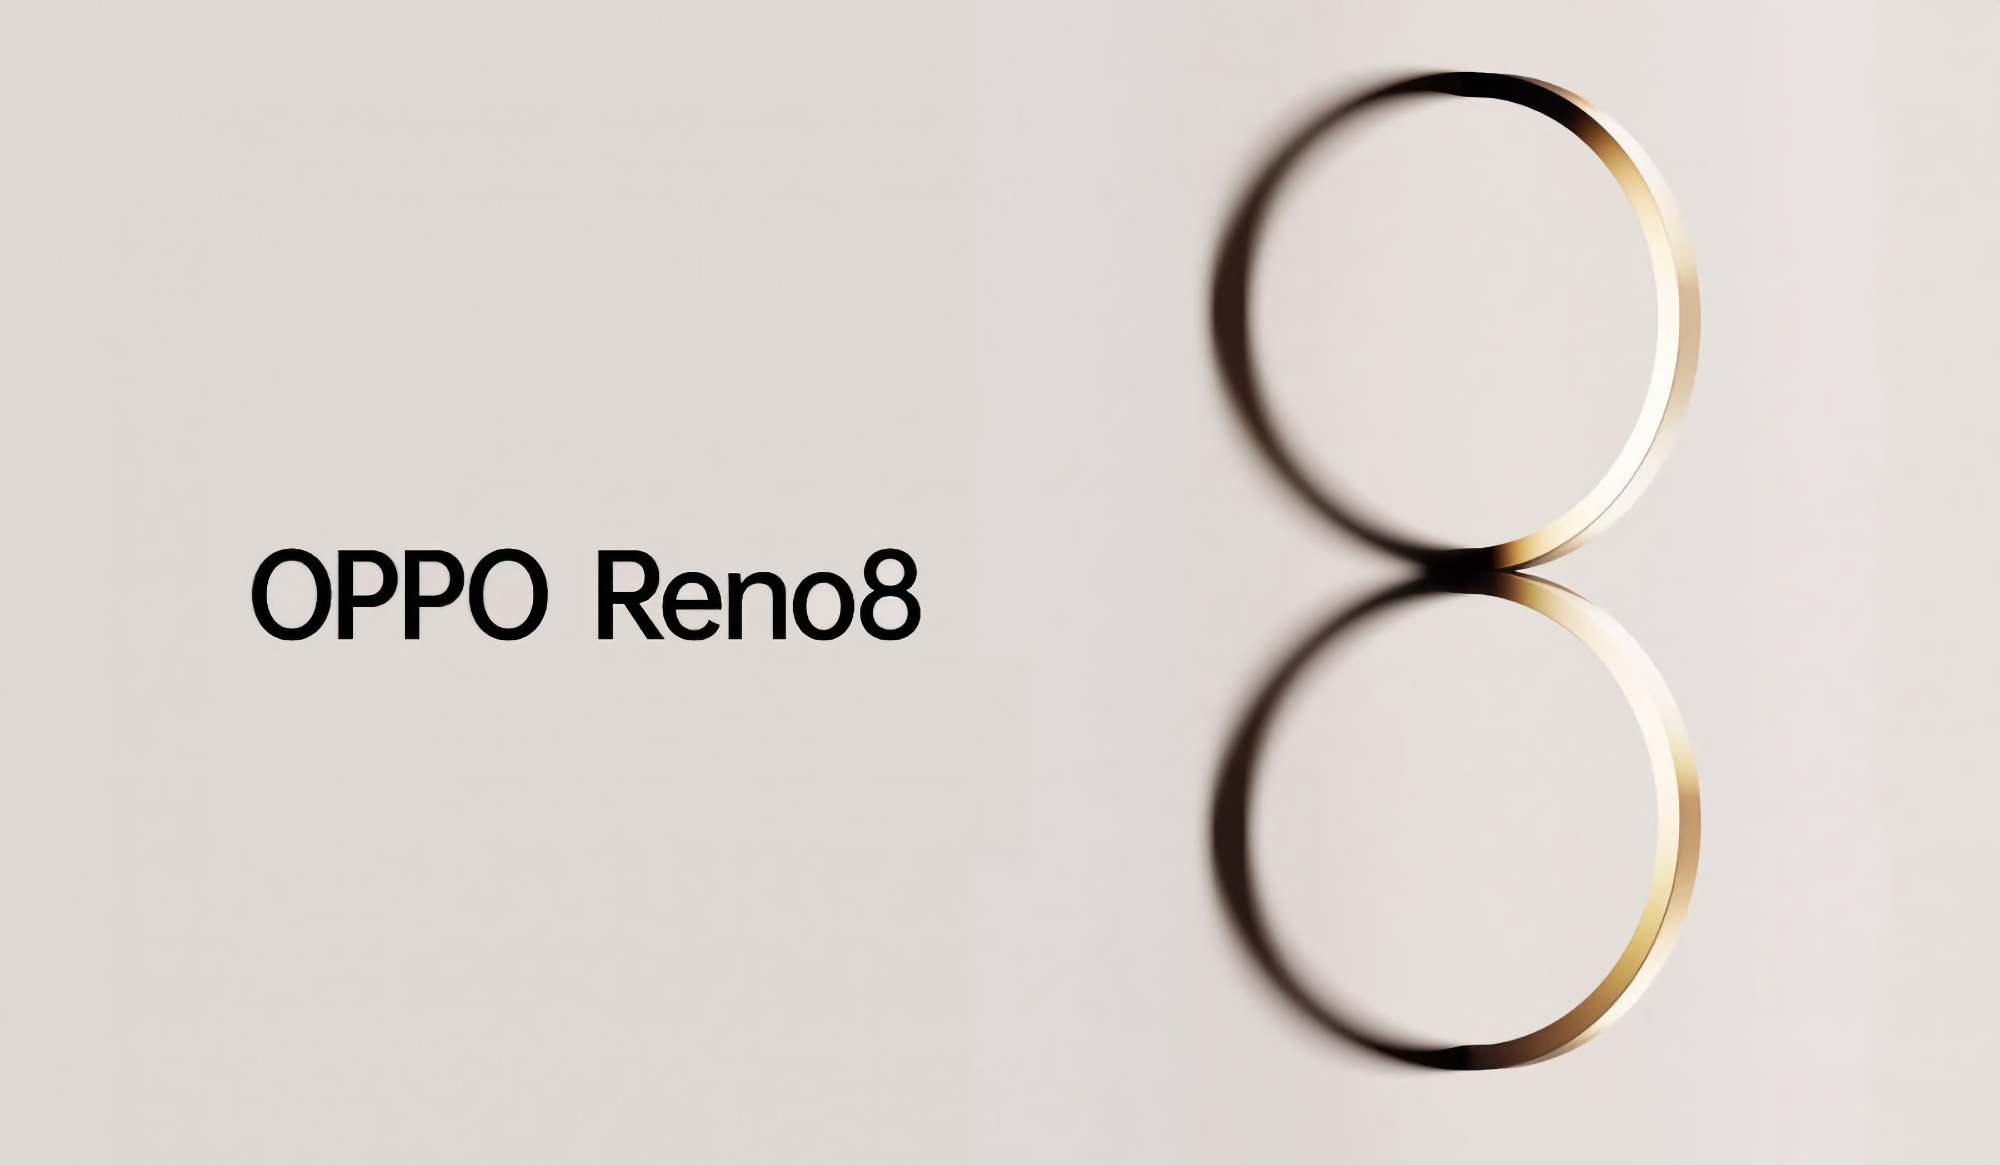 Oficial: la línea de teléfonos inteligentes OPPO Reno 8 se presentará el 23 de mayo